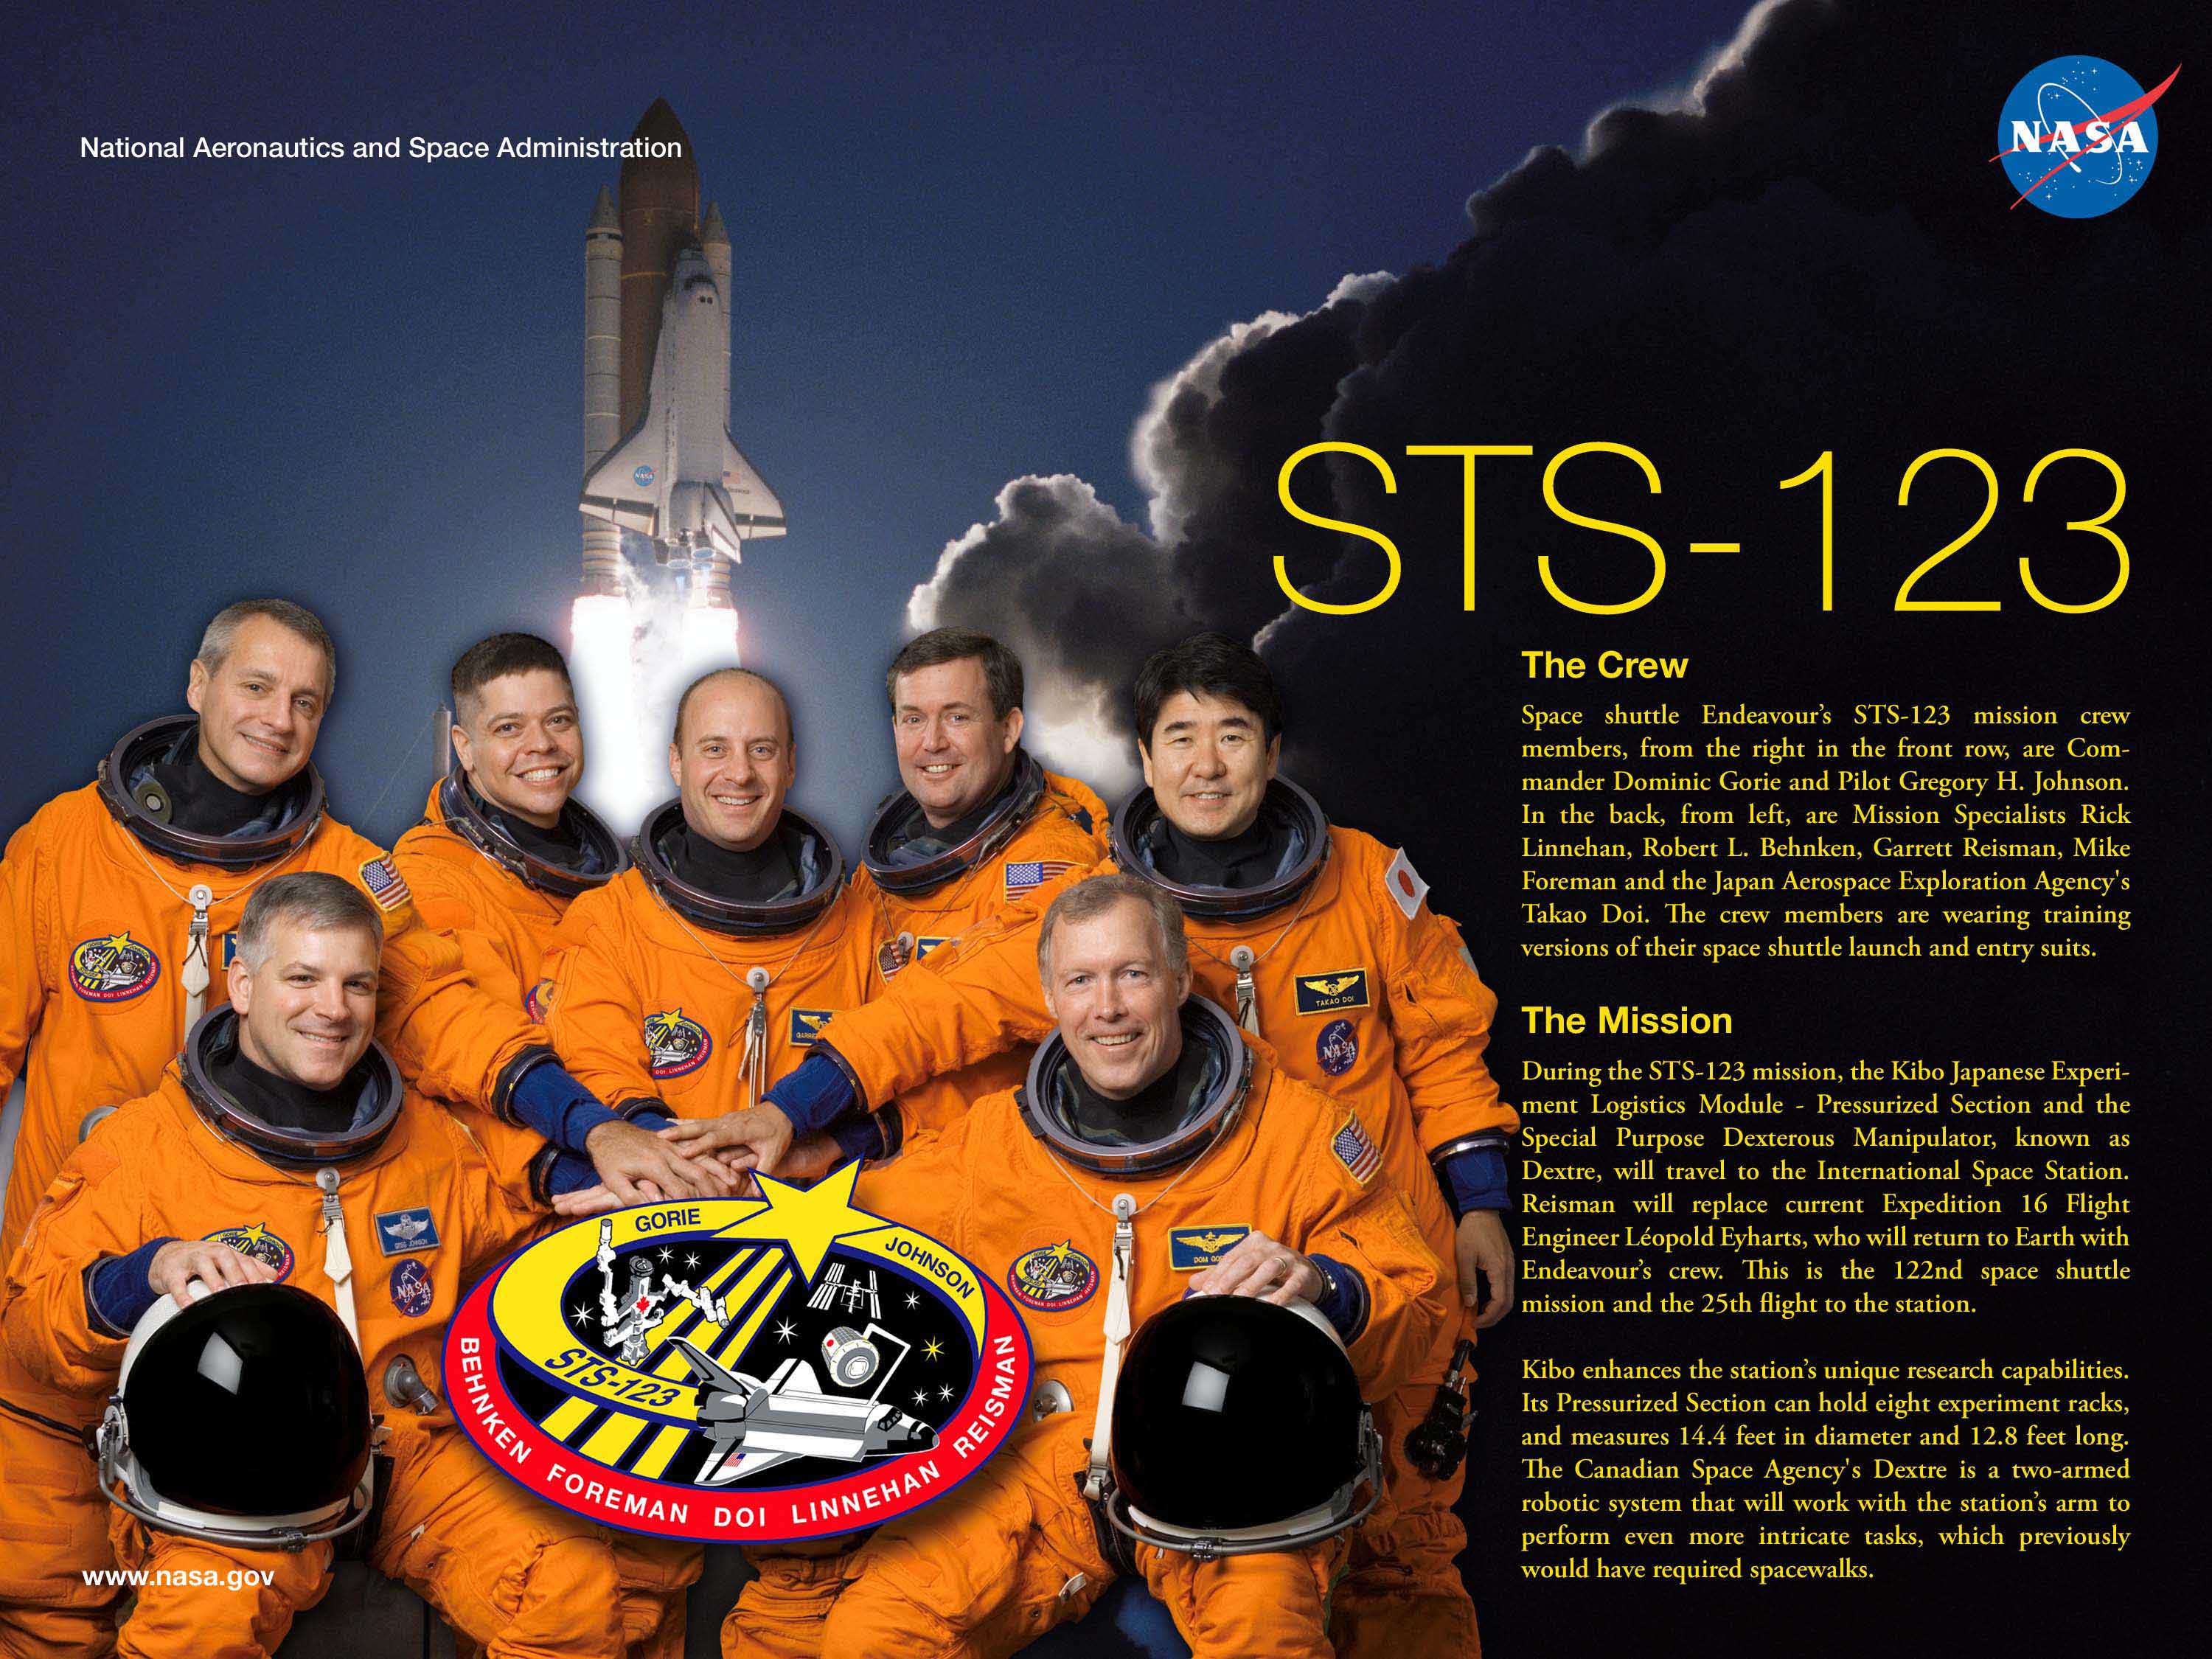 STS-123 Crew Poster. Image credit NASA